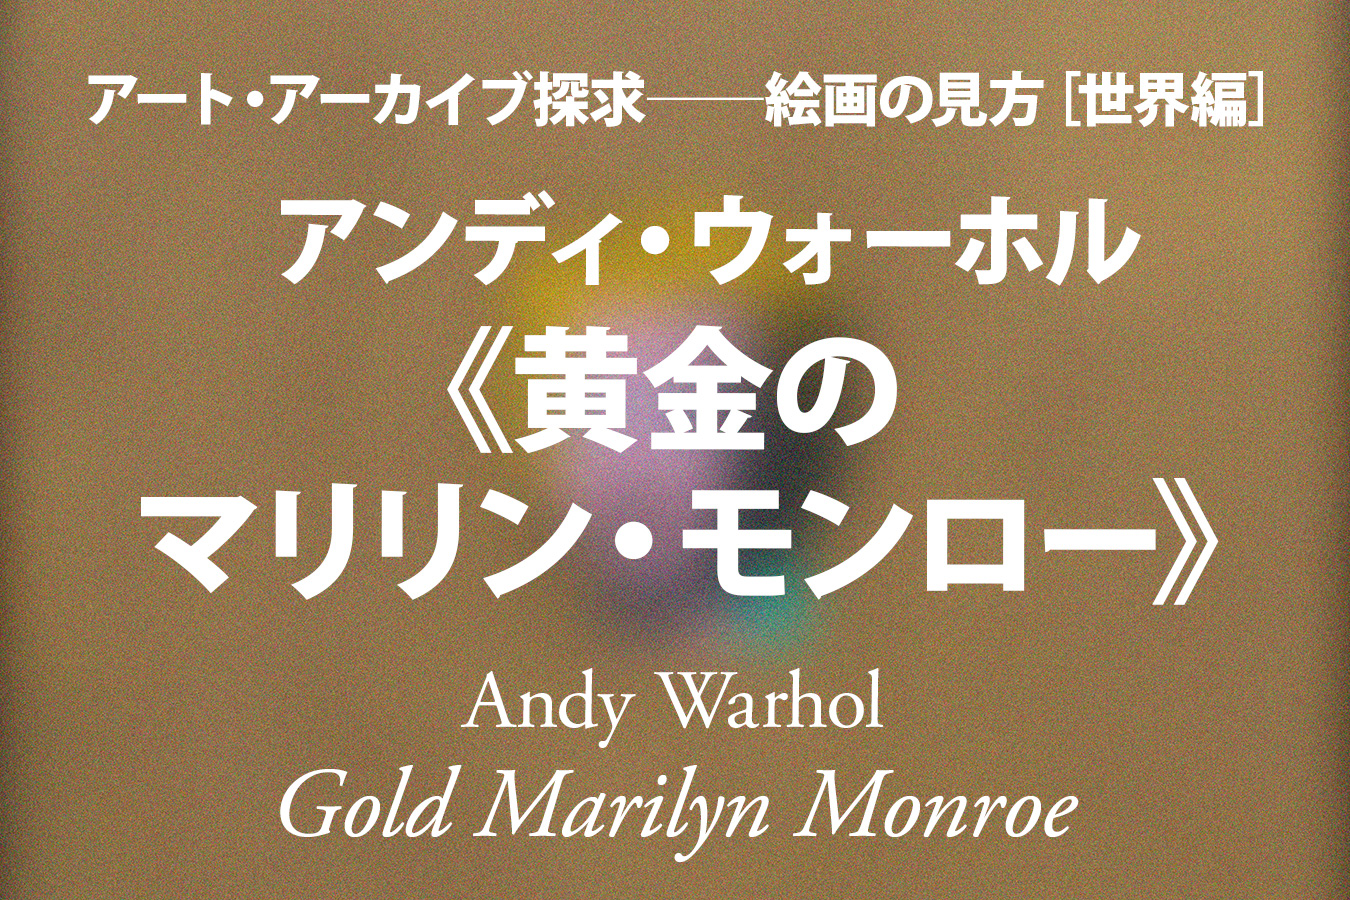 アンディ ウォーホル 黄金のマリリン モンロー 豊かな空虚 林 卓行 アート アーカイブ探求 美術館 アート情報 Artscape